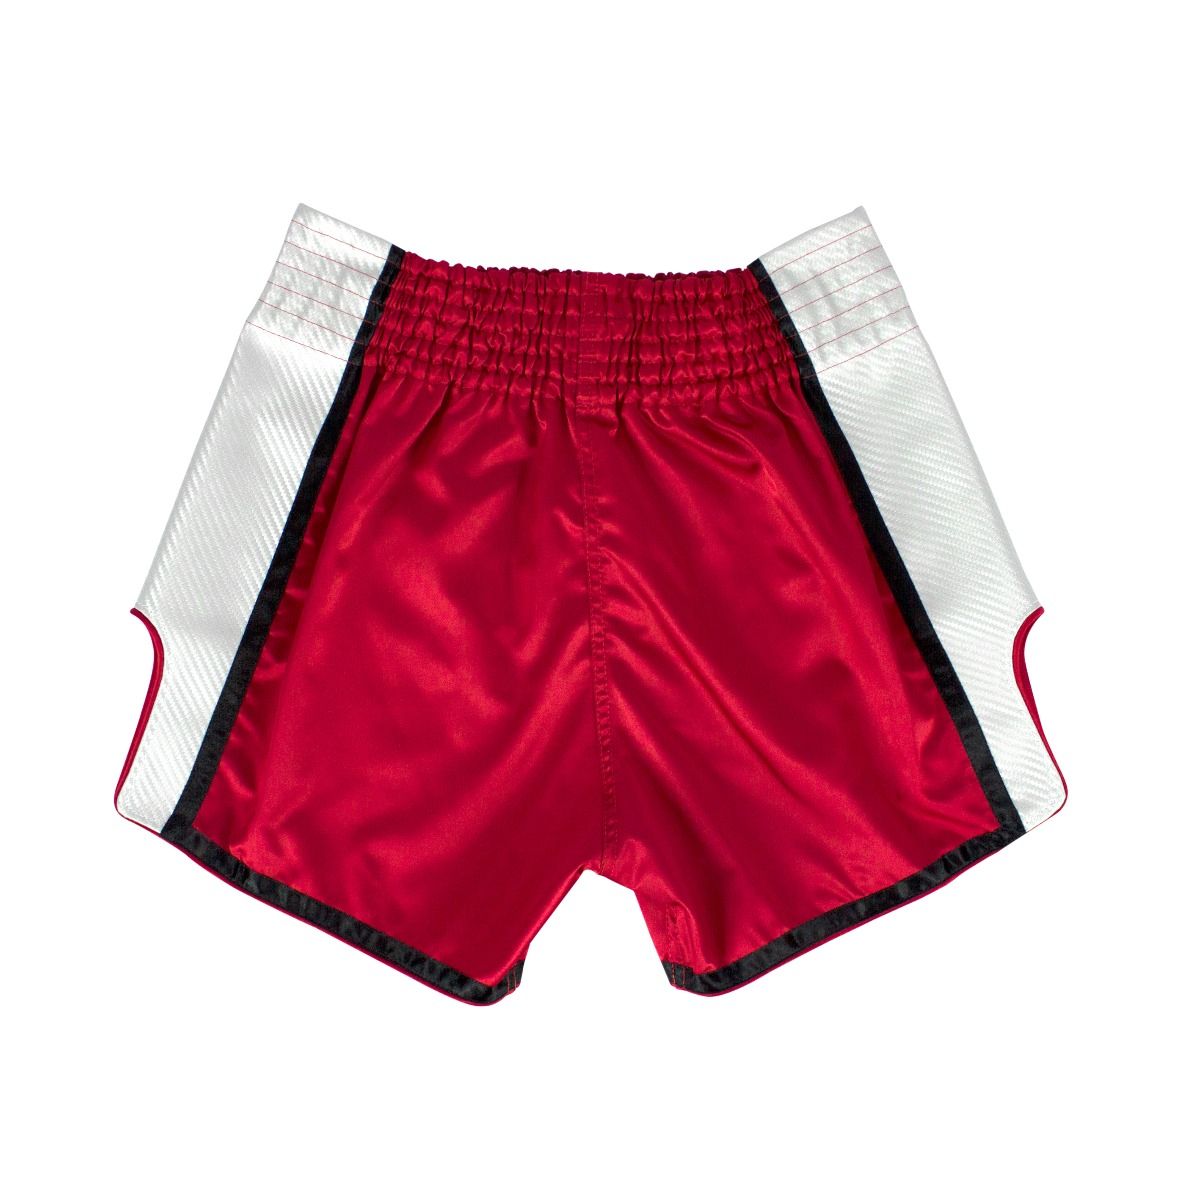 FAIRTEX BS1704 Muay Thai Shorts - Red/Gray